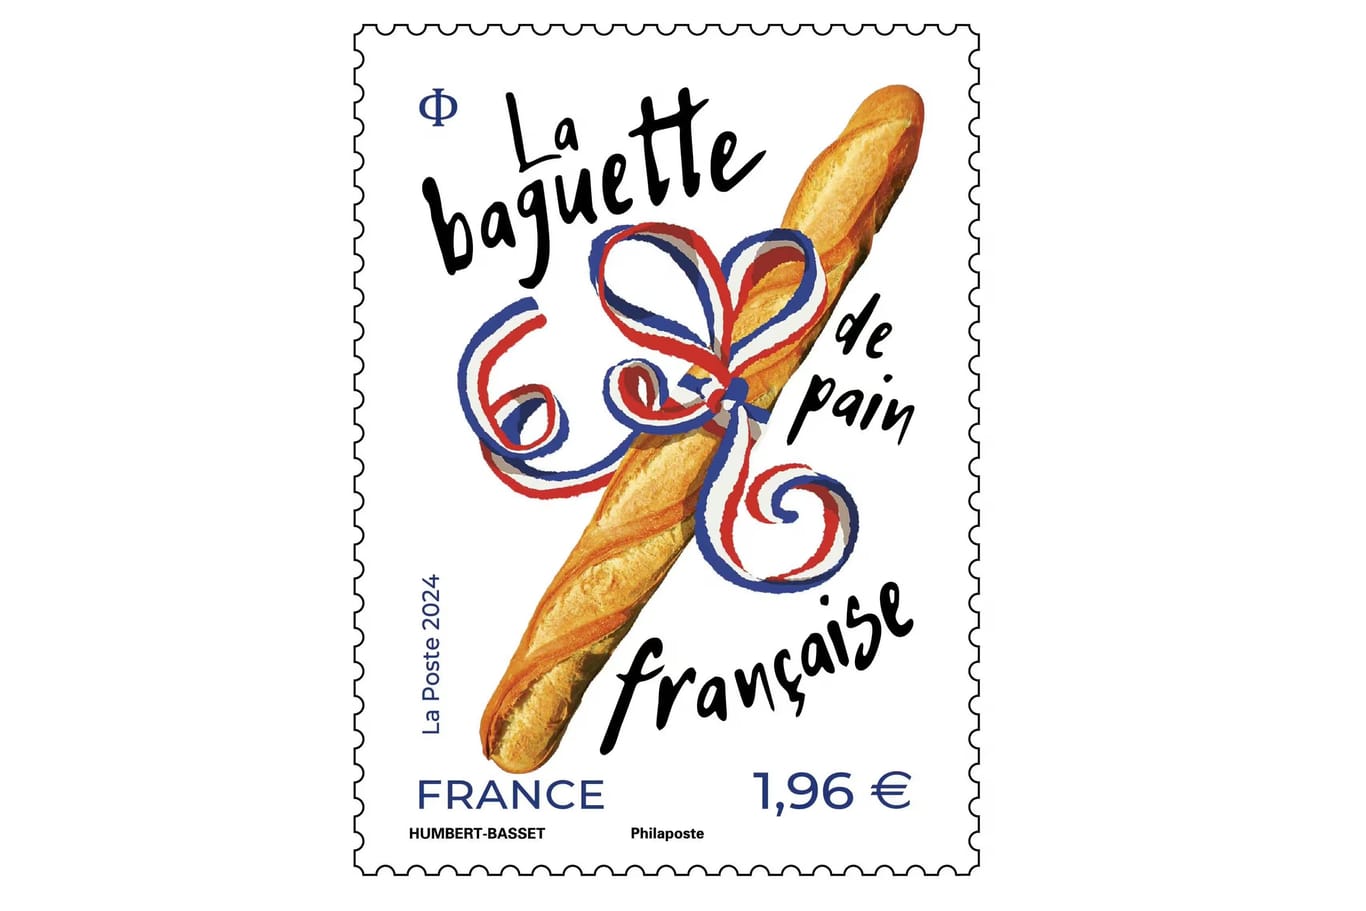 Die Briefmarke zur Feier des Baguettes hat auch einen Duft.